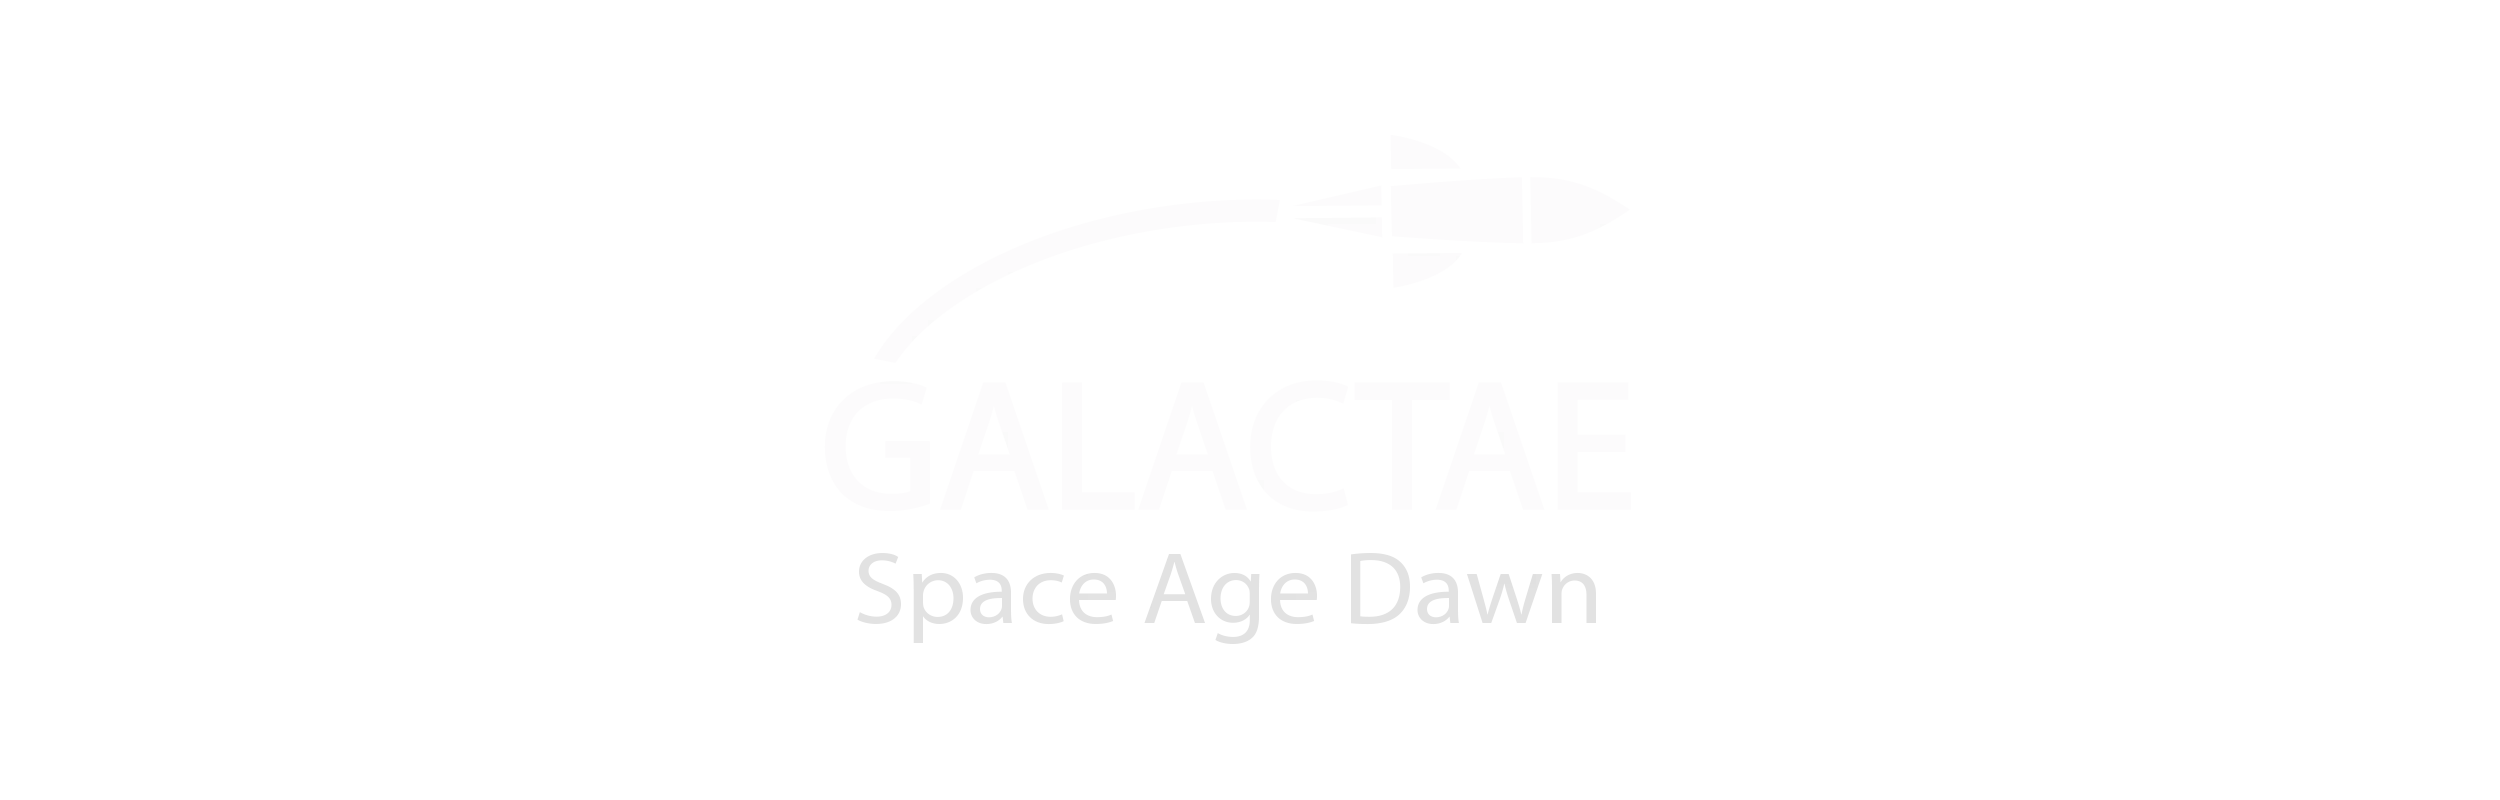 Galactae: Space Age Dawn logo